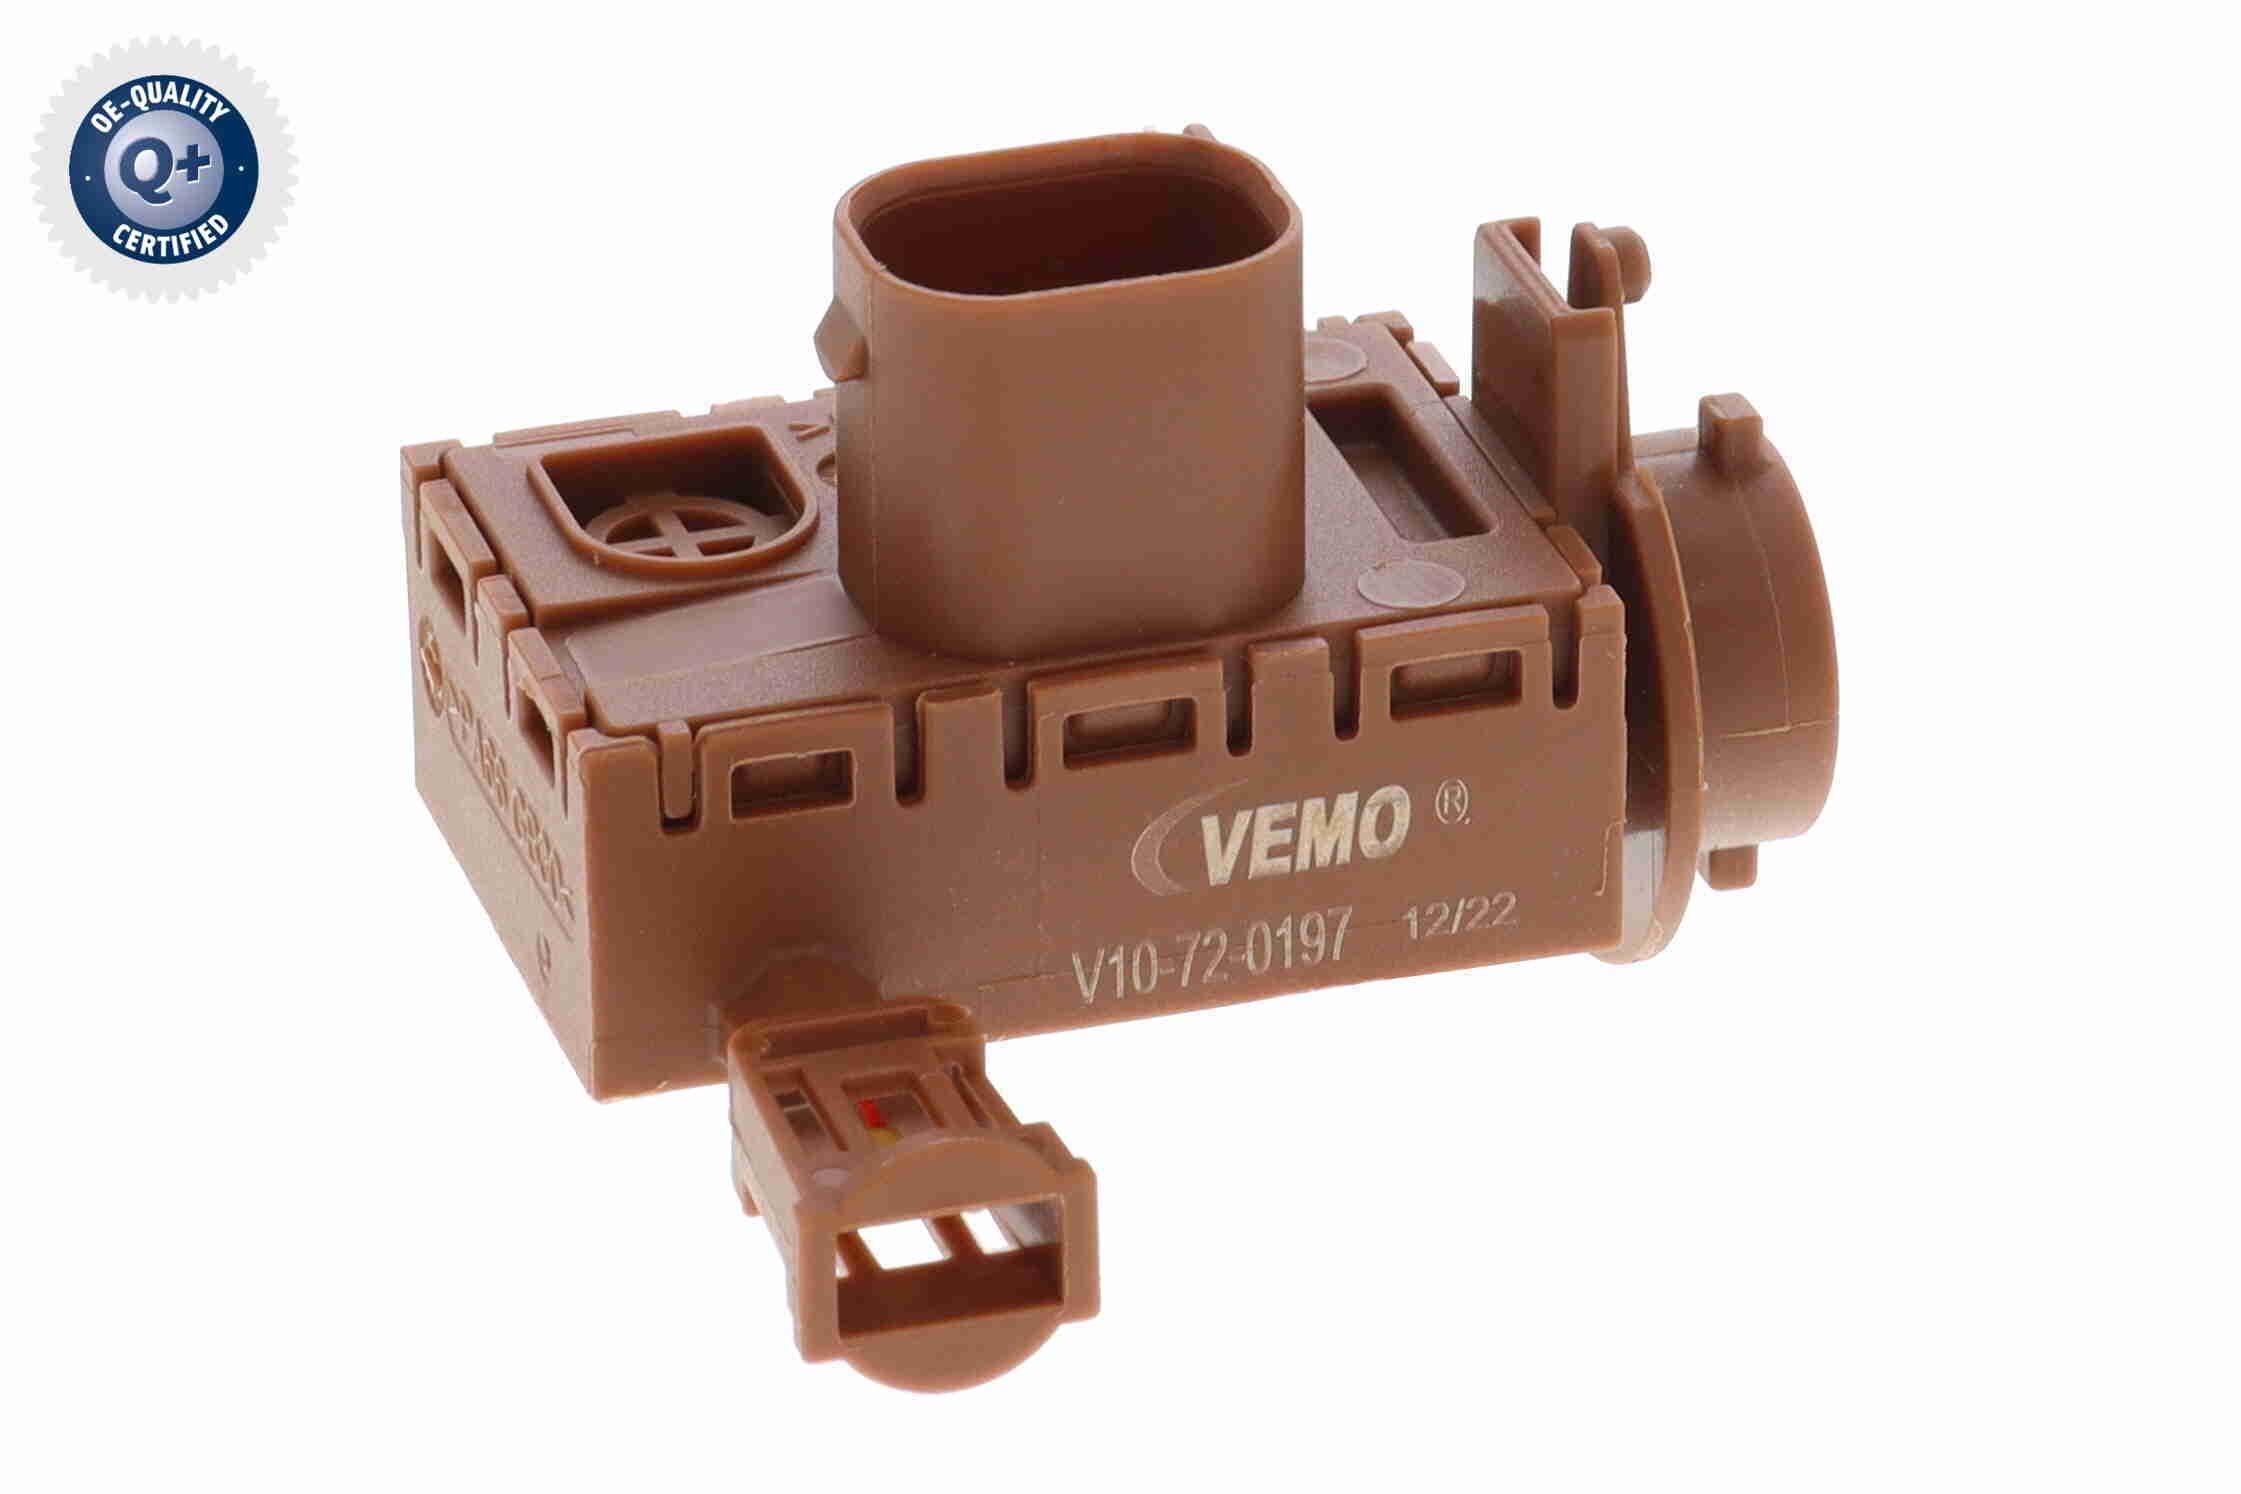 VEMO V10-72-0197 AUDI Air quality sensor in original quality